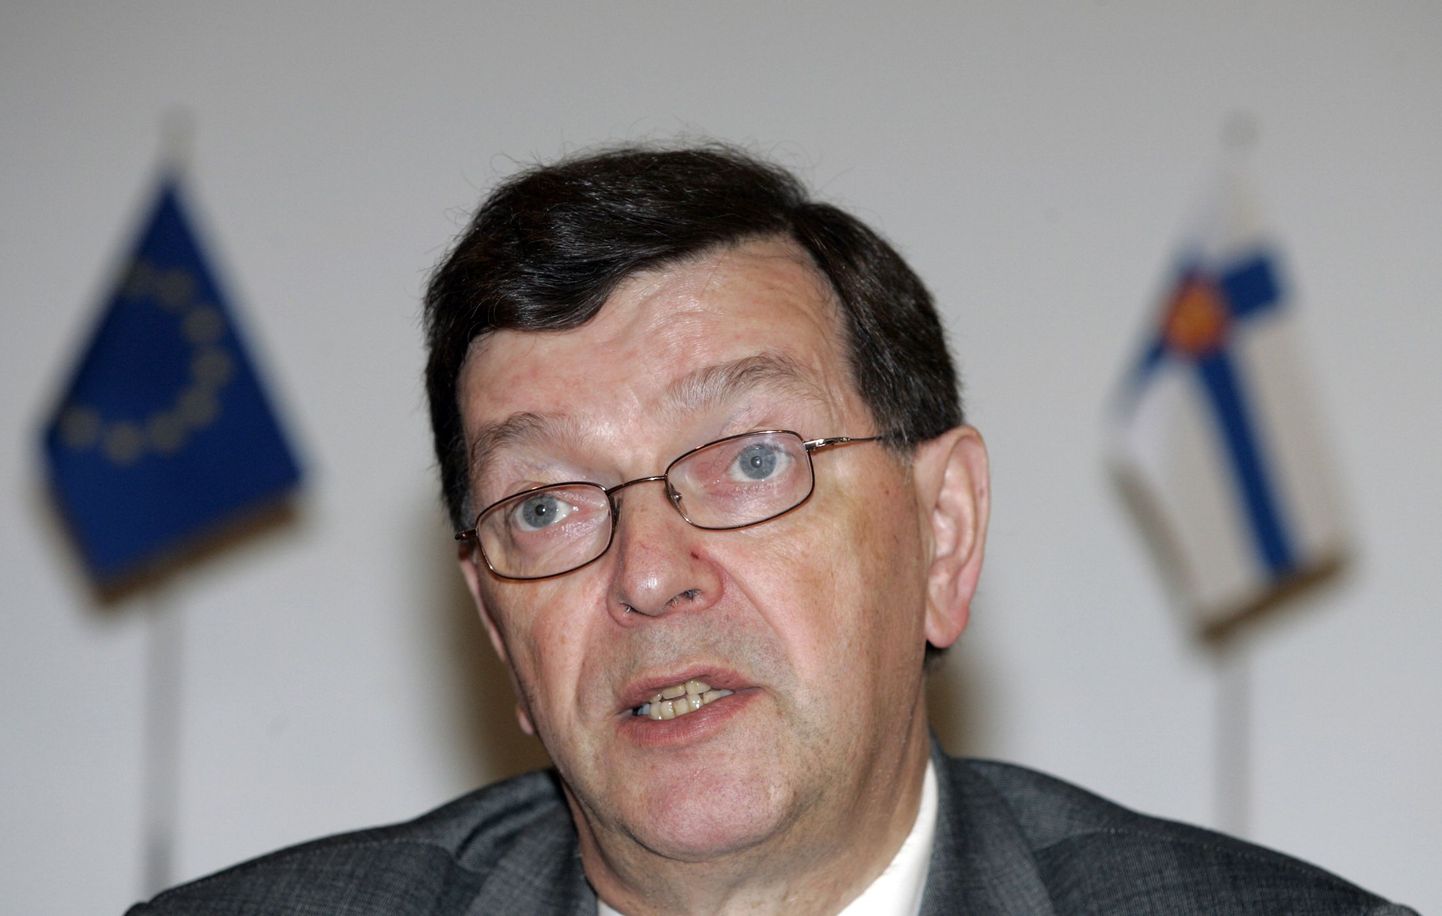 Soome väliskaubandus- ja arenguminister Paavo Väyrynen.